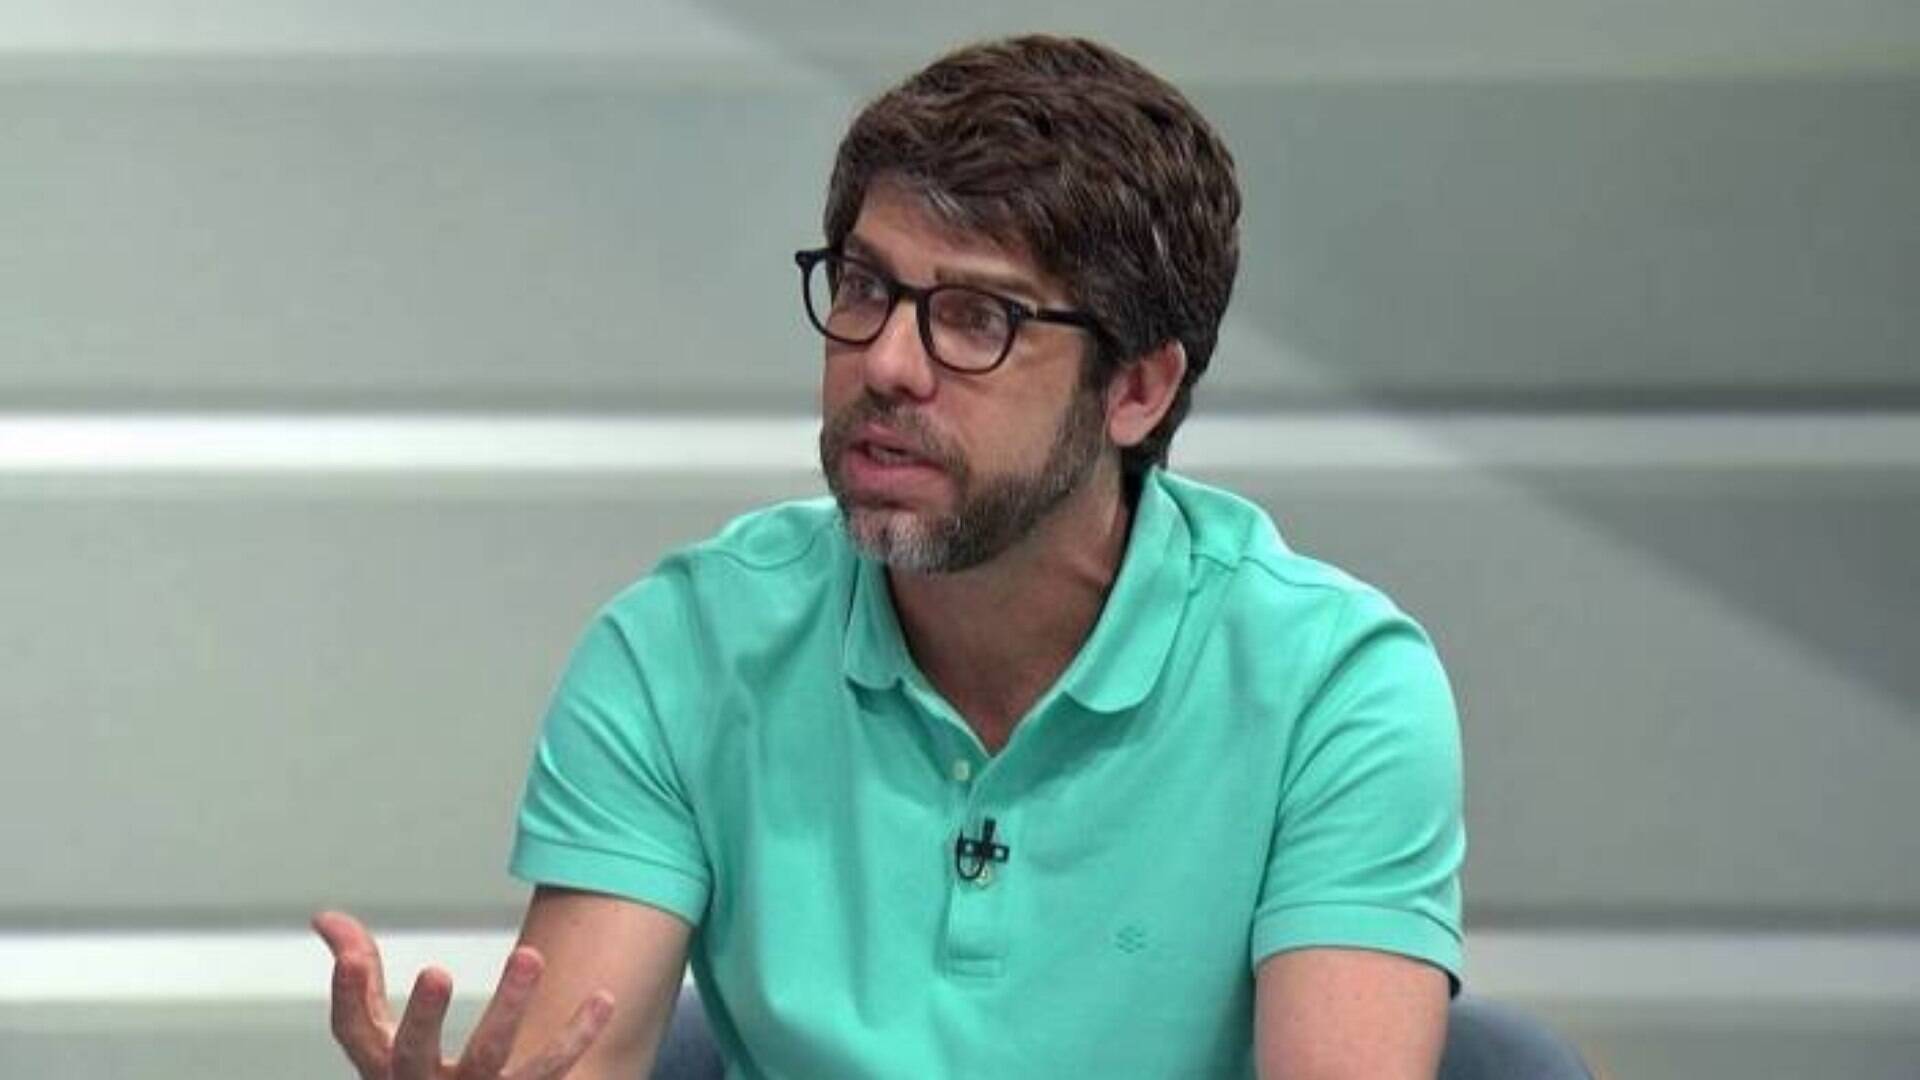 Juninho diz que se afastou de familiares que votaram em Bolsonaro - Futebol  - iG